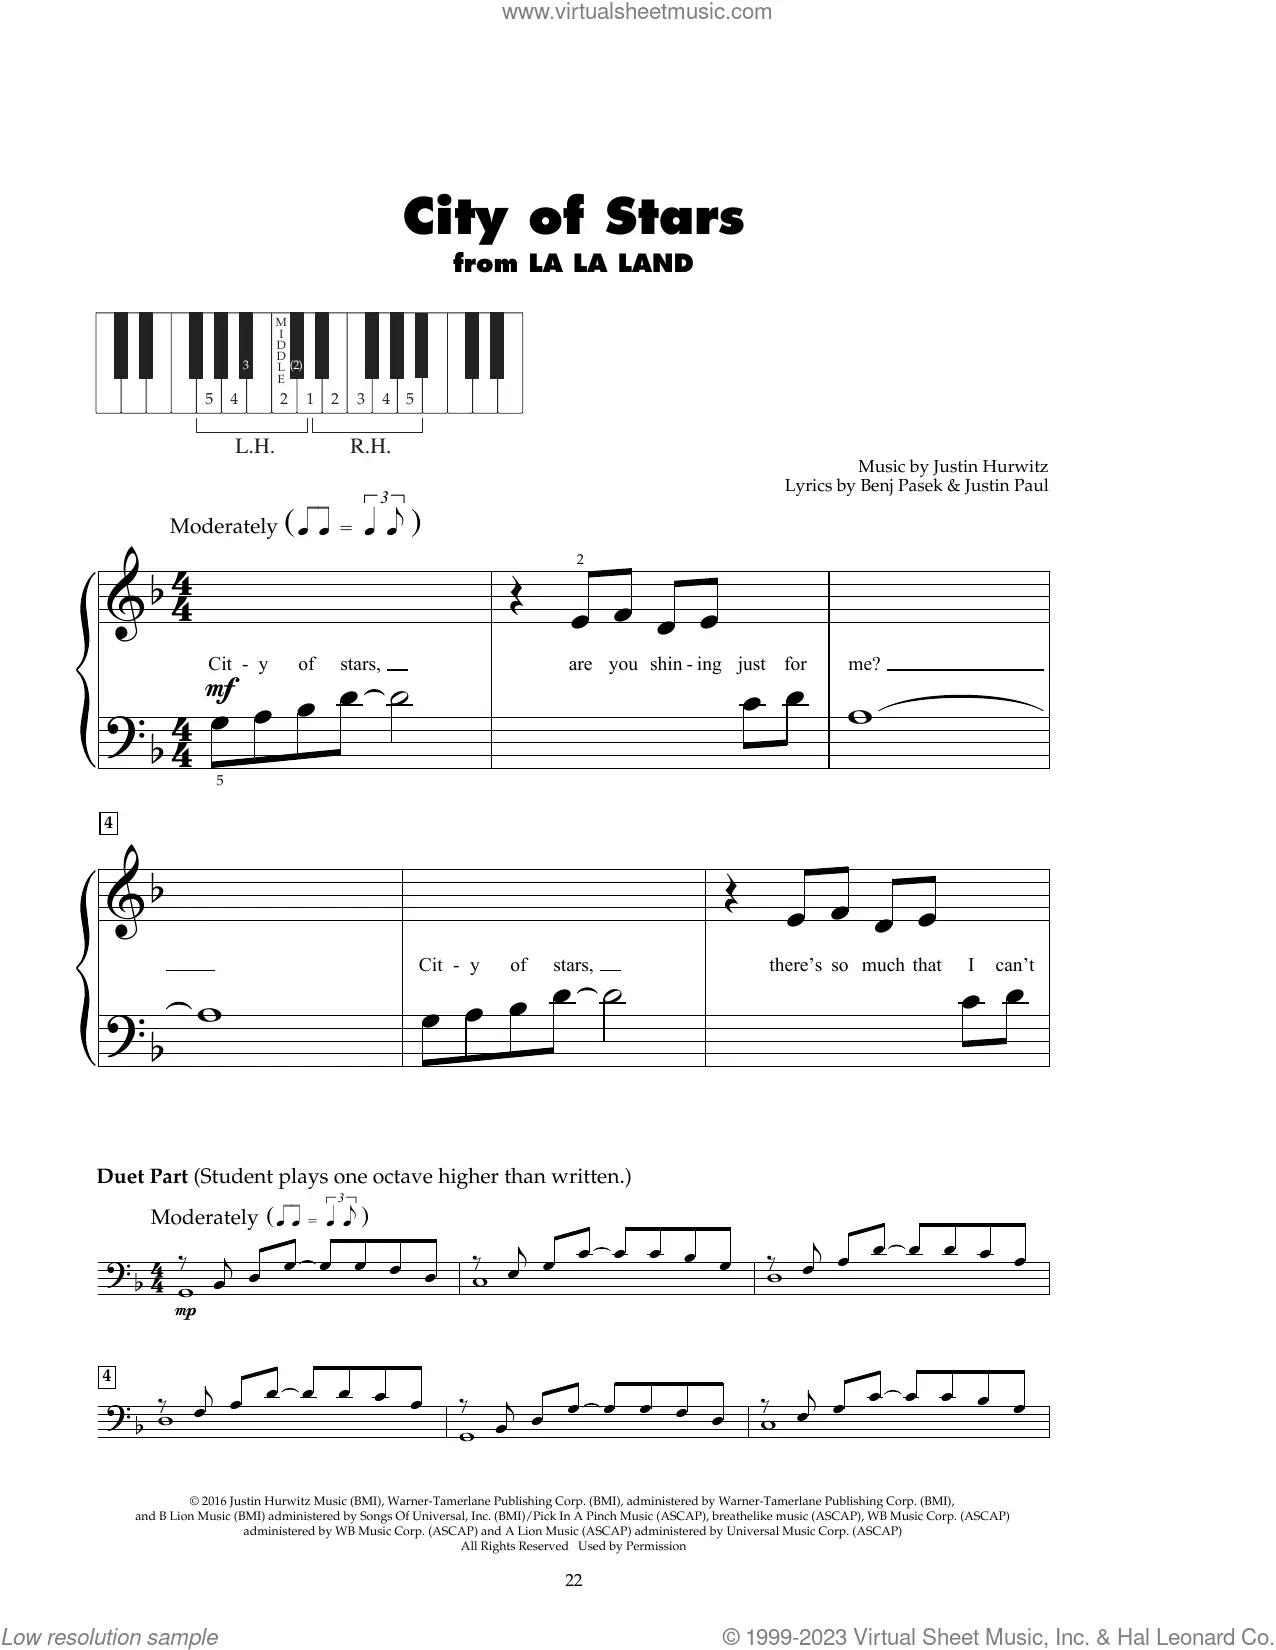 City Of Stars Sheet Music (Piano)